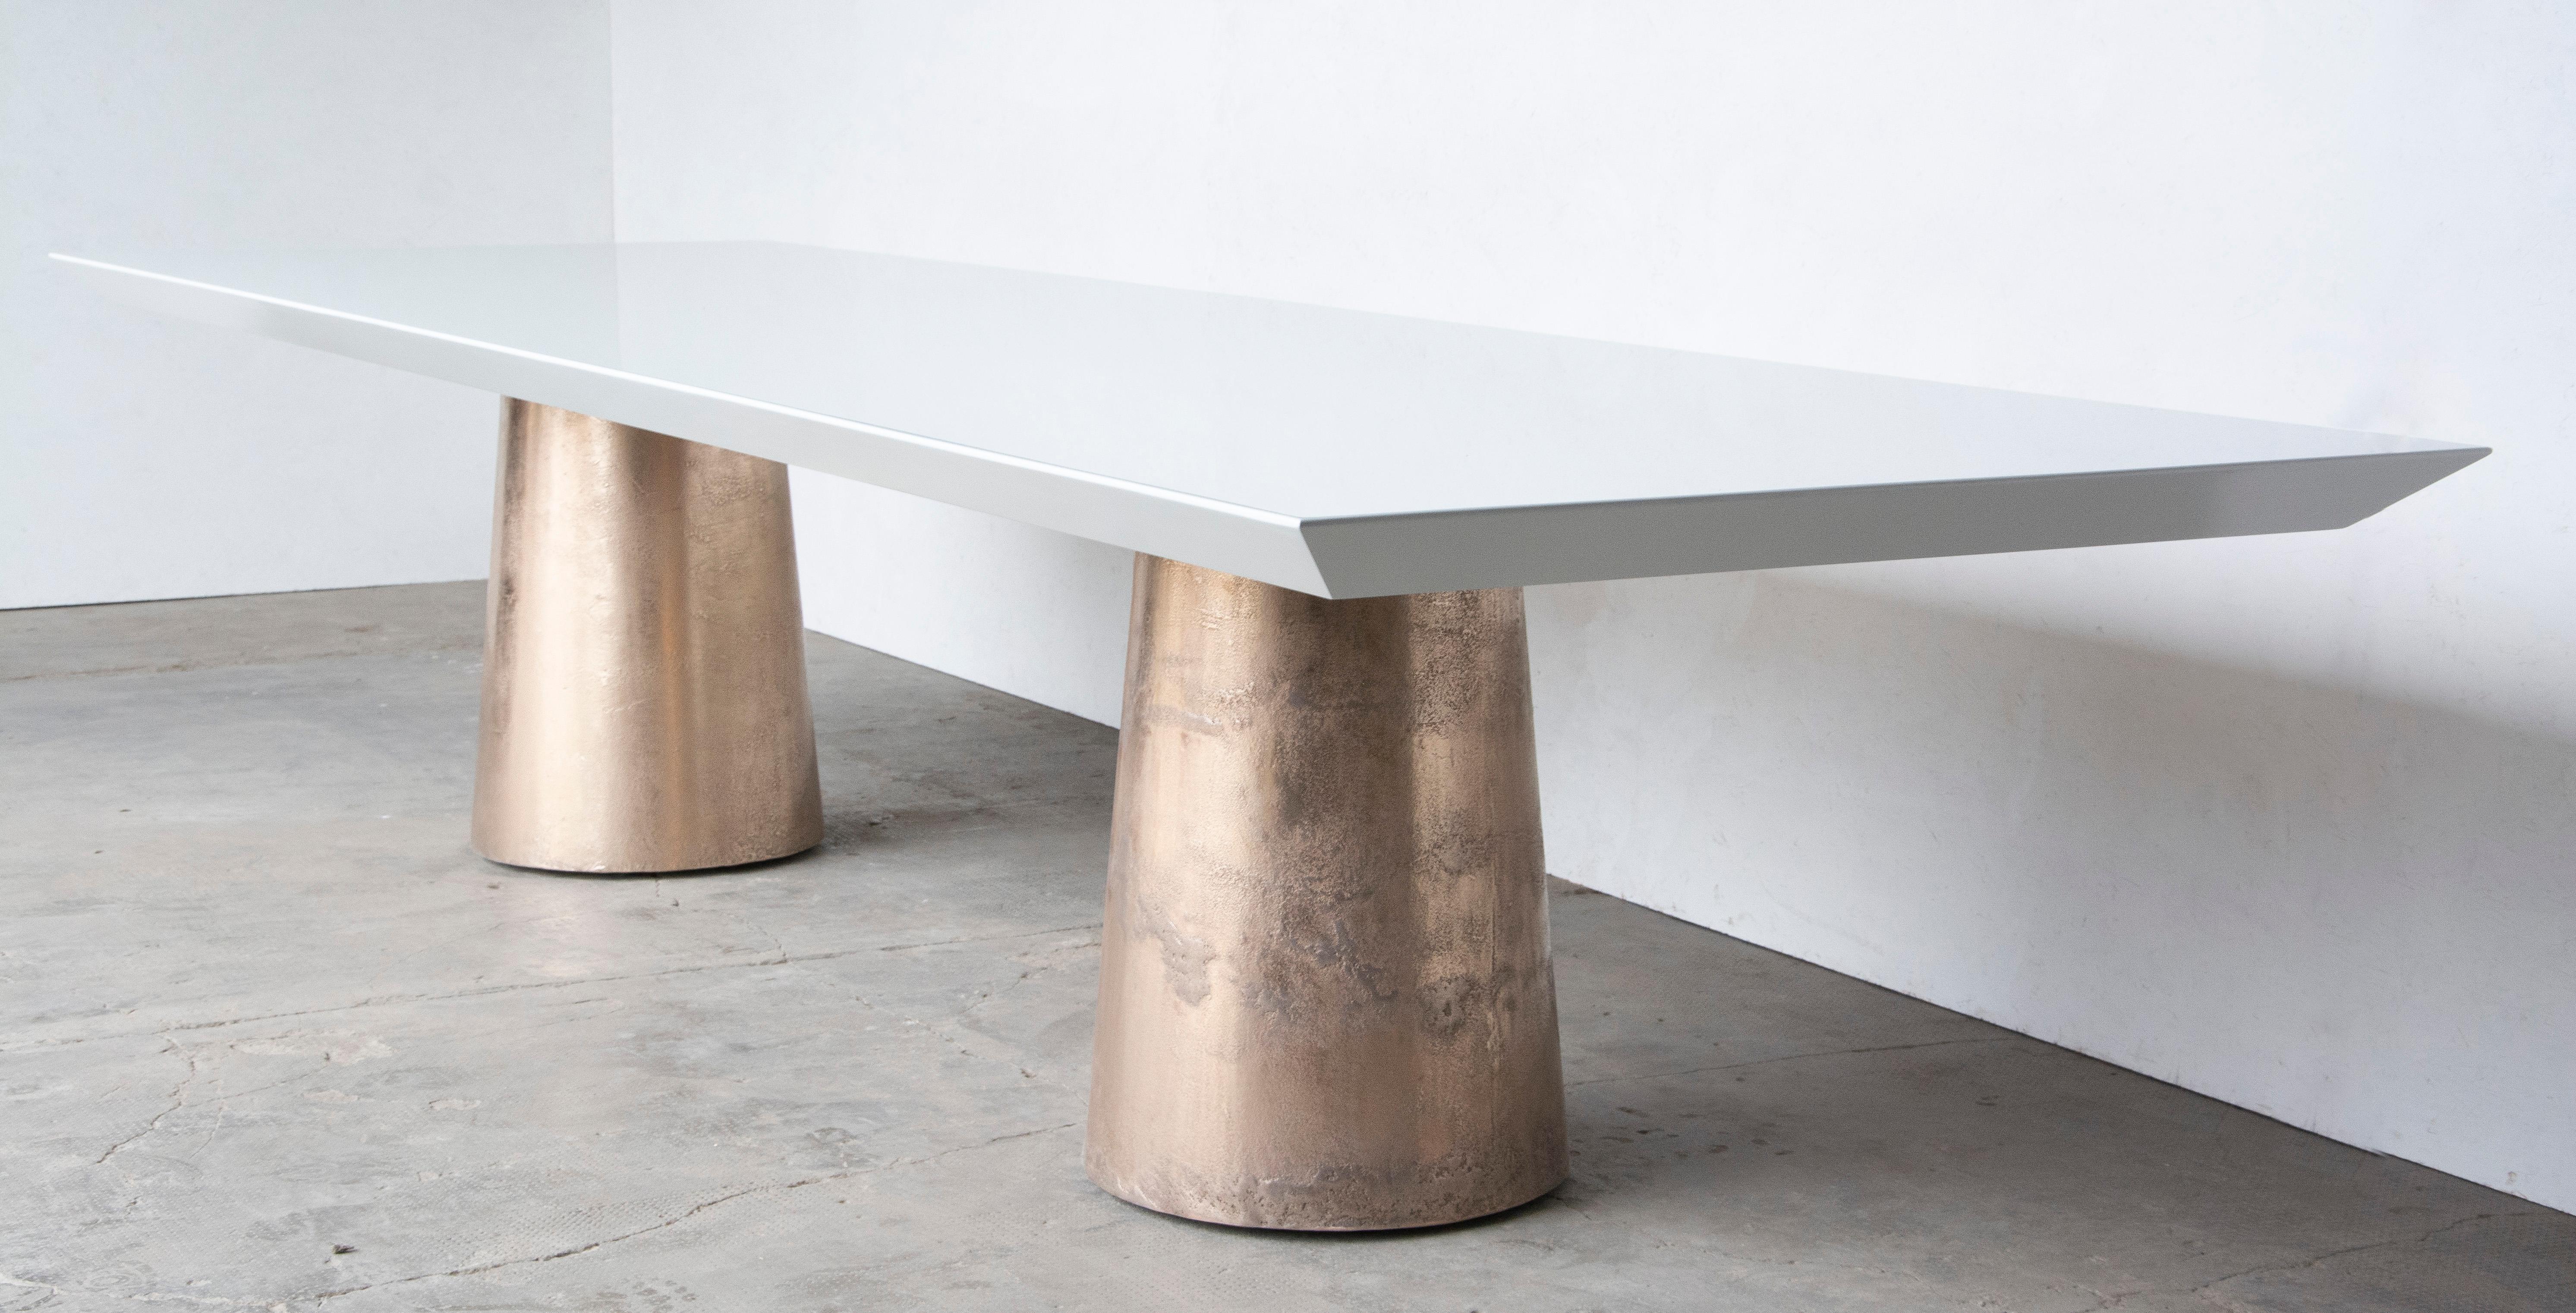 Der Tisch Benino besteht aus zwei gegossenen Bronzefüßen, die nur teilweise poliert sind, um die Unvollkommenheiten hervorzuheben, die von der verbrannten Erde zeugen, die sie einst während des Gießens umgab. Die Oberseite hingegen ist glatt und in